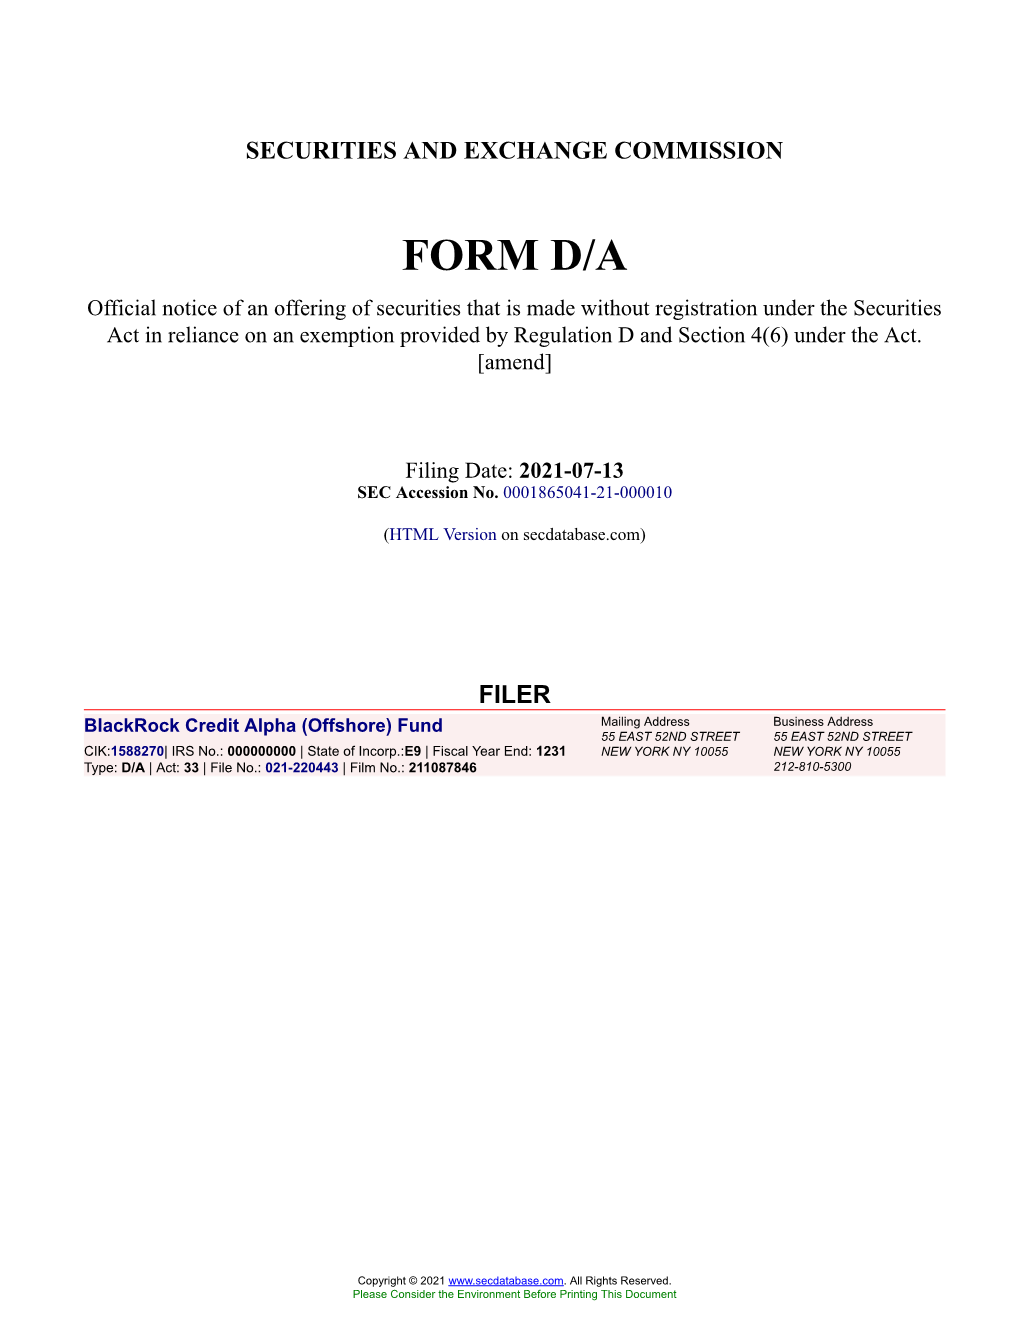 Blackrock Credit Alpha (Offshore) Fund Form D/A Filed 2021-07-13